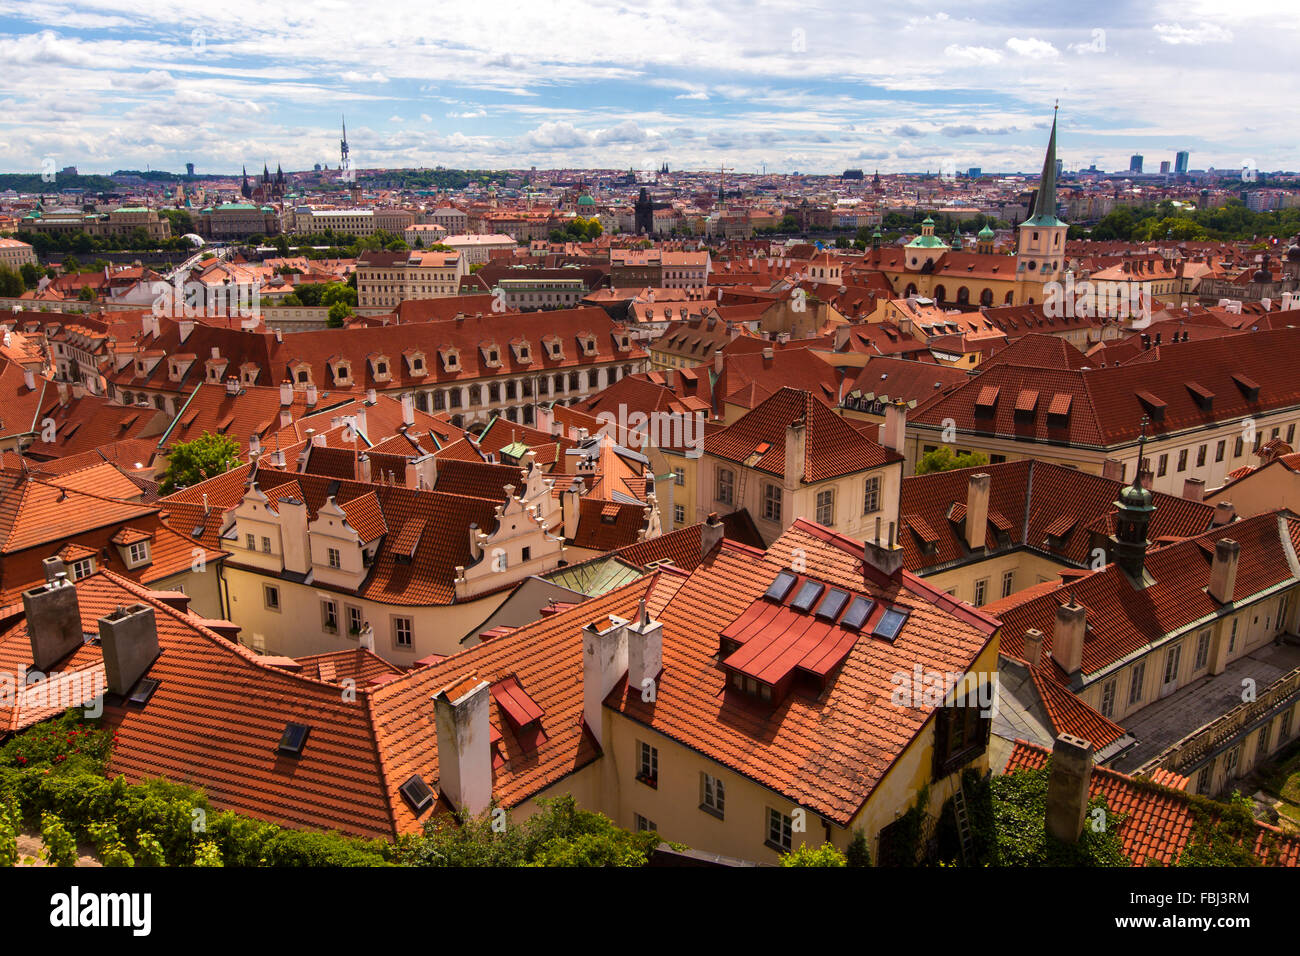 Tourisme et visites, vue de dessus plus de ville européenne Prague de tuiles rouges. Beau temps, journée d'été, vue aérienne Banque D'Images